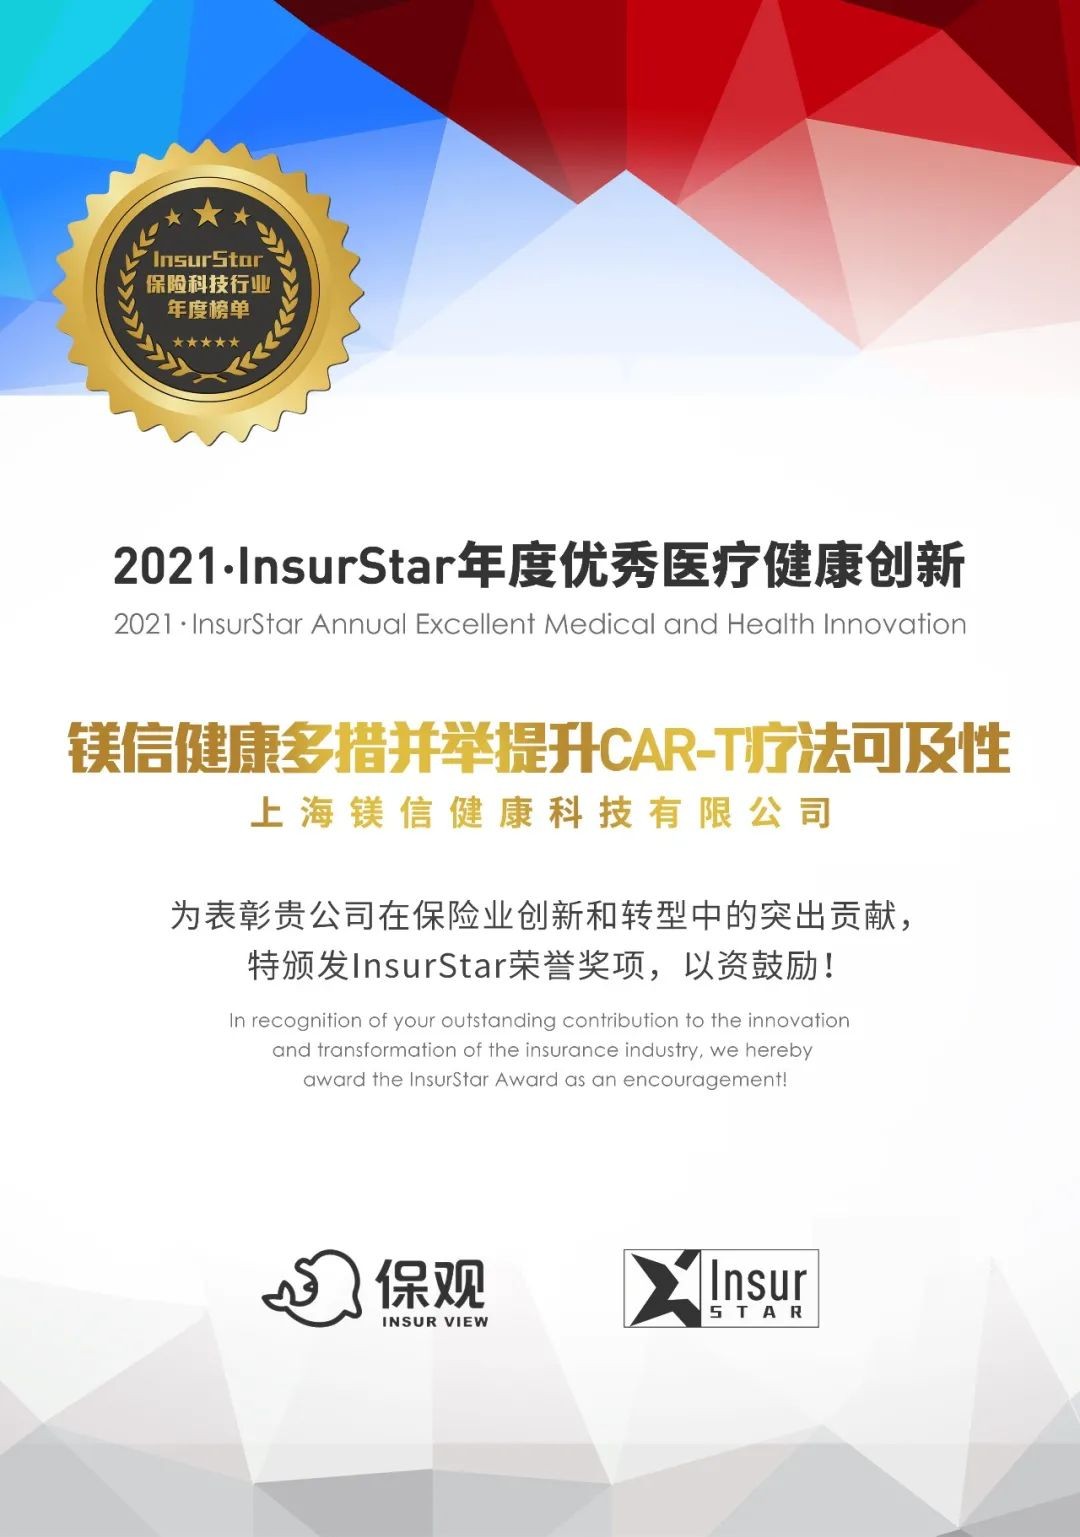 创新引领、惠及患者，镁信健康荣获“InsurStar-2021年度优秀医疗健康创新”大奖